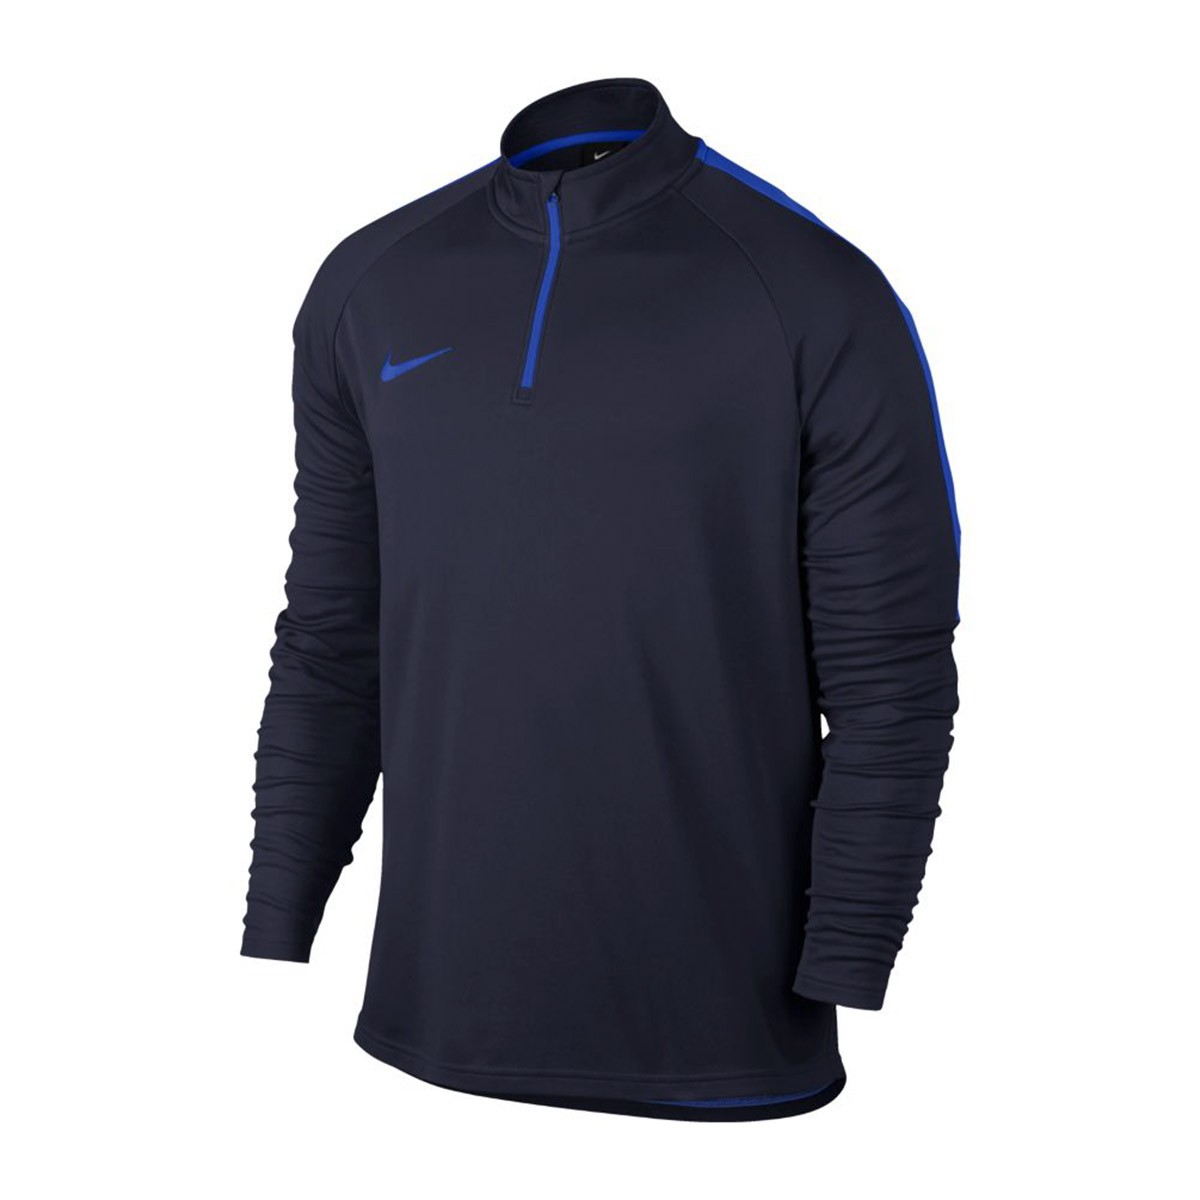 Sweatshirt Nike Dry Academy Football 